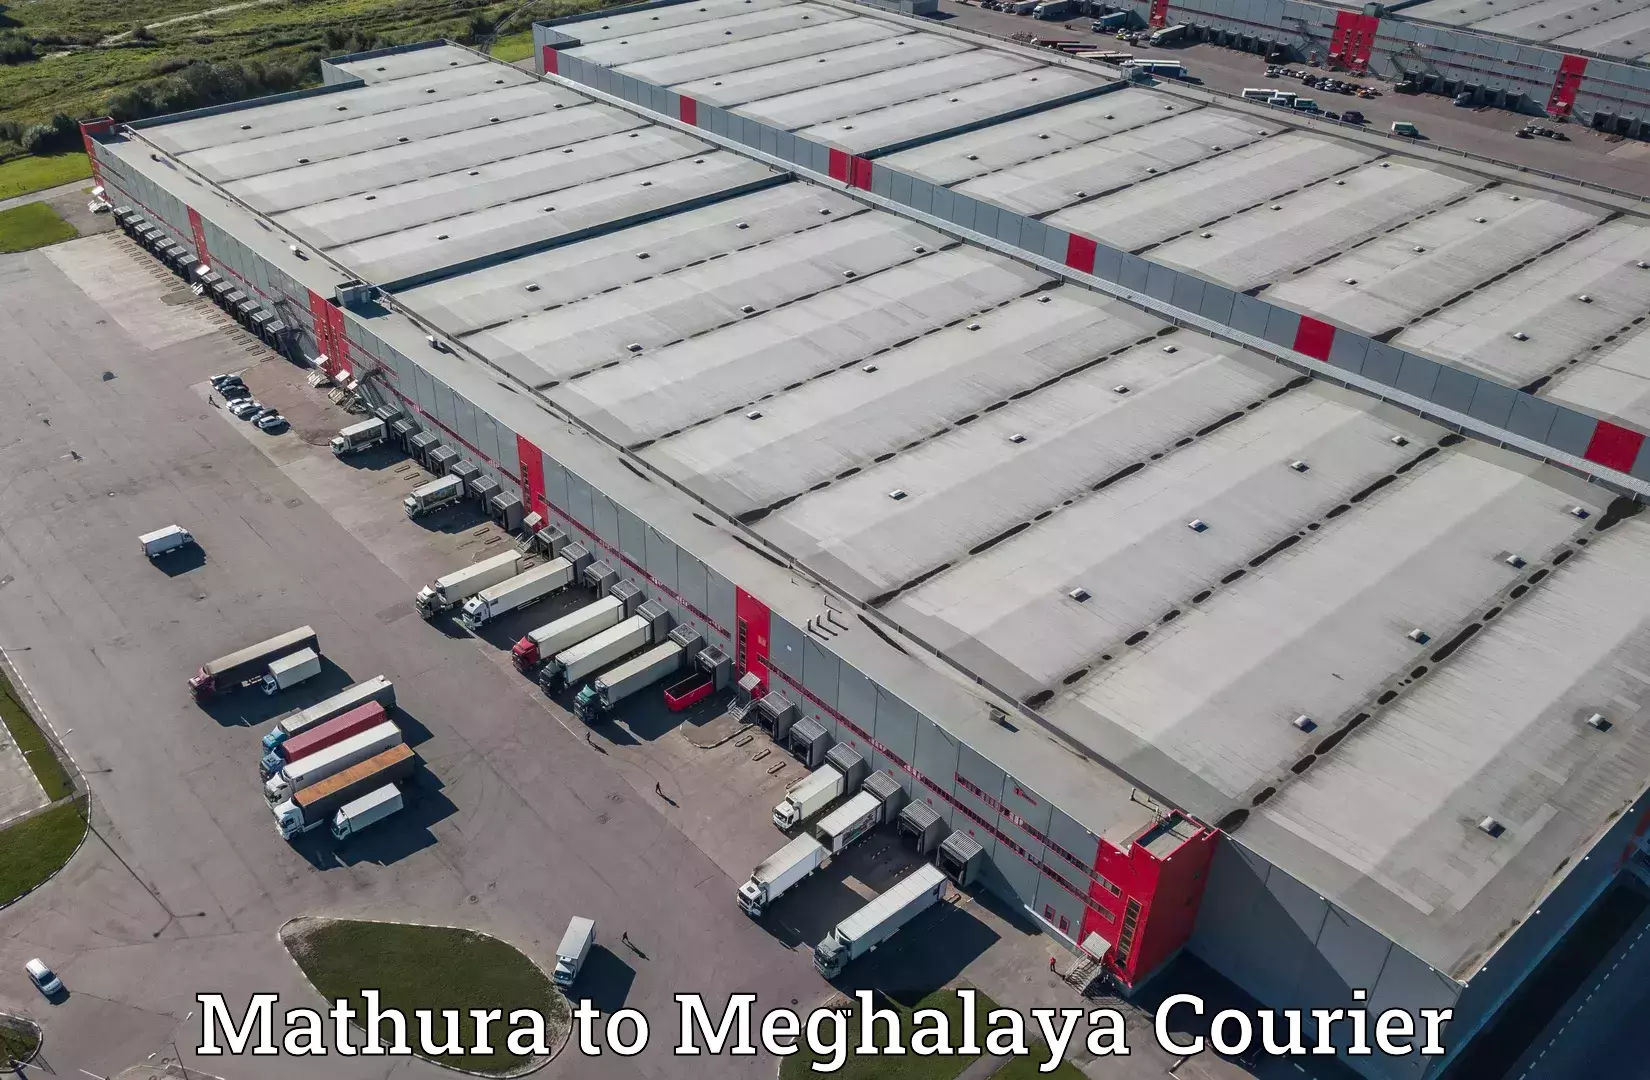 Express logistics service Mathura to Tura